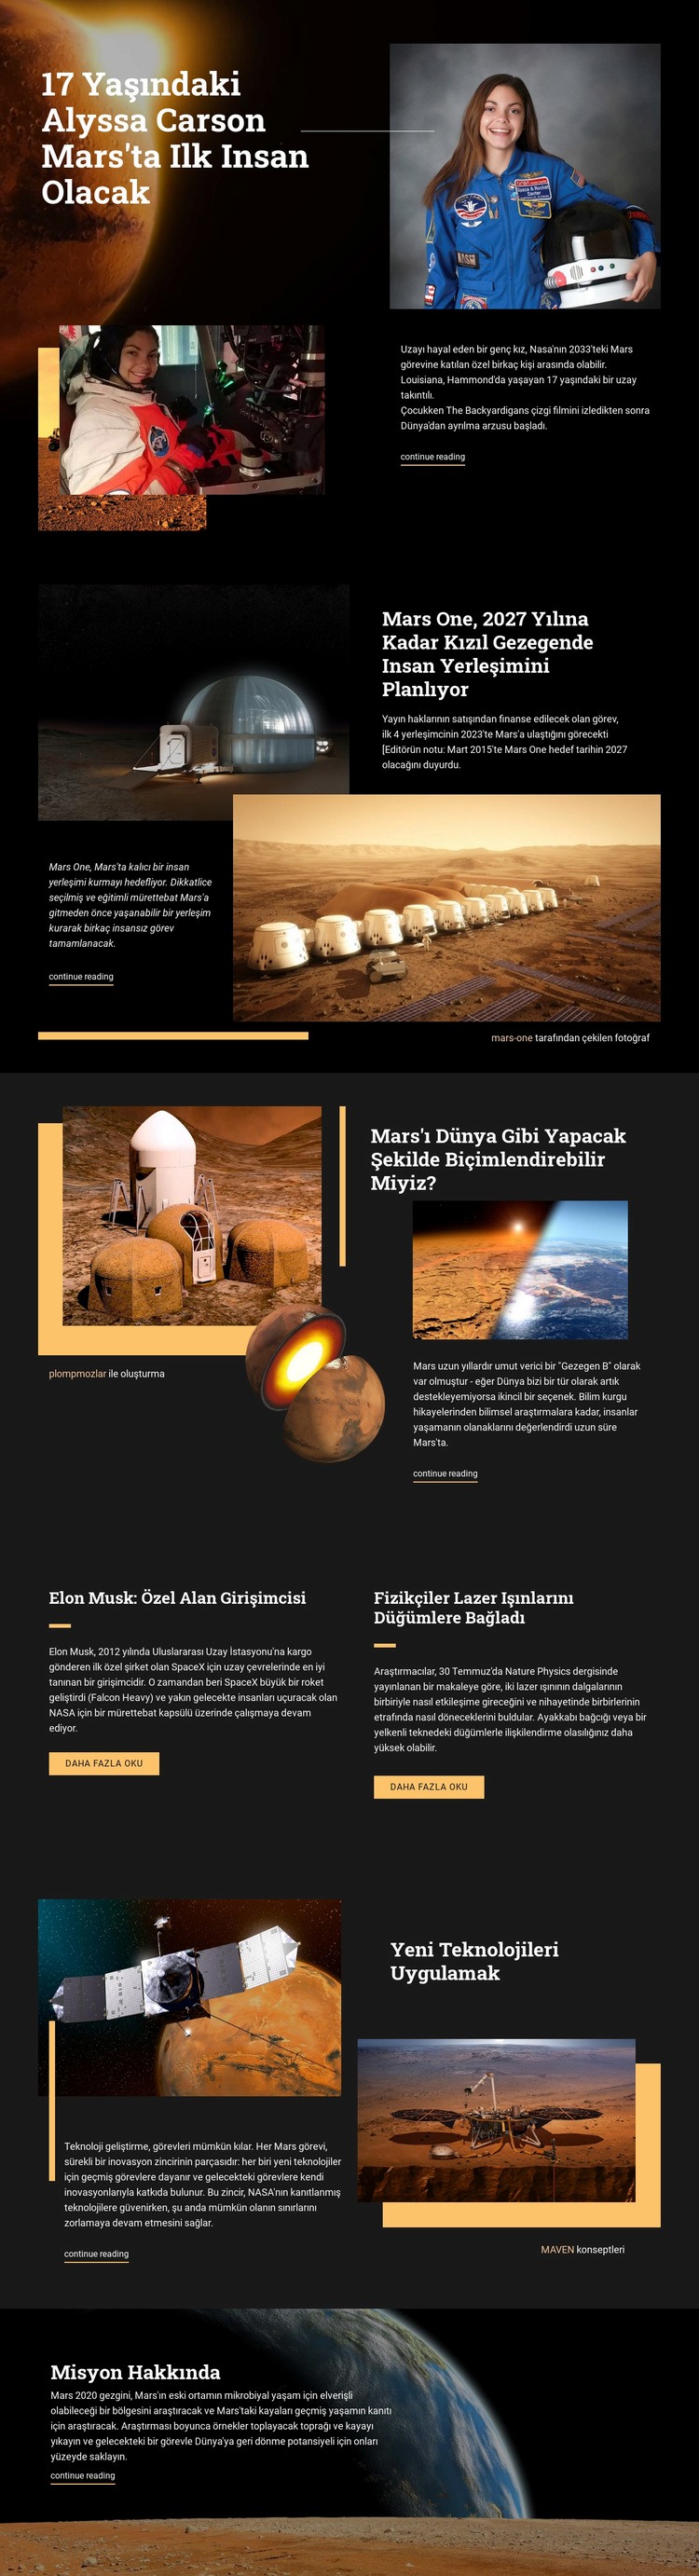 Mars'taki İlk İnsan Açılış sayfası